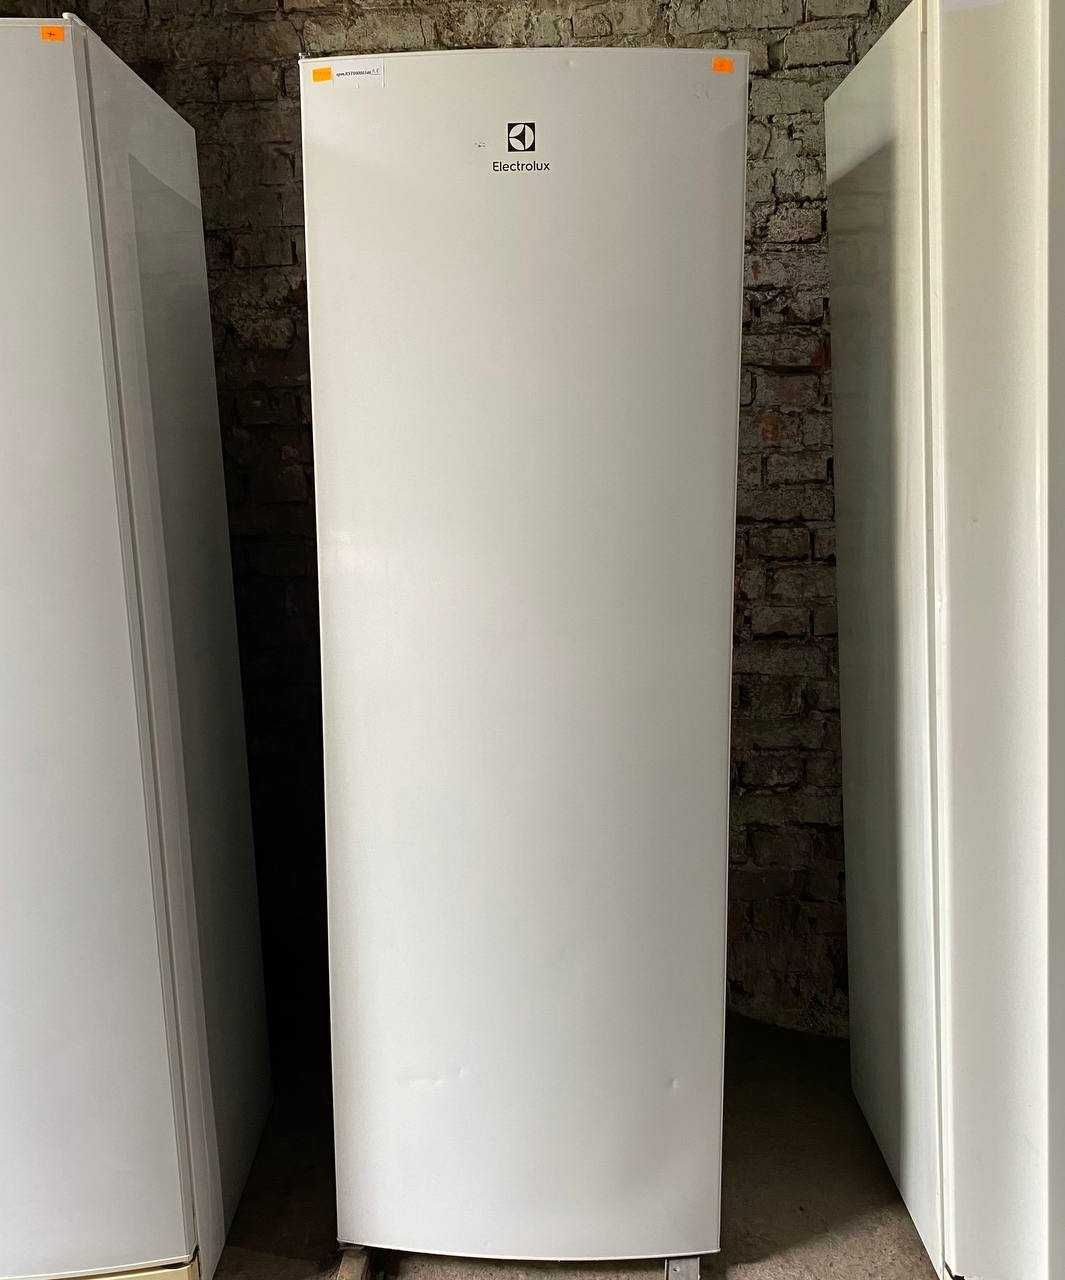 Холодильник  Electrolux EUE7000W ( 175 см) з Європи